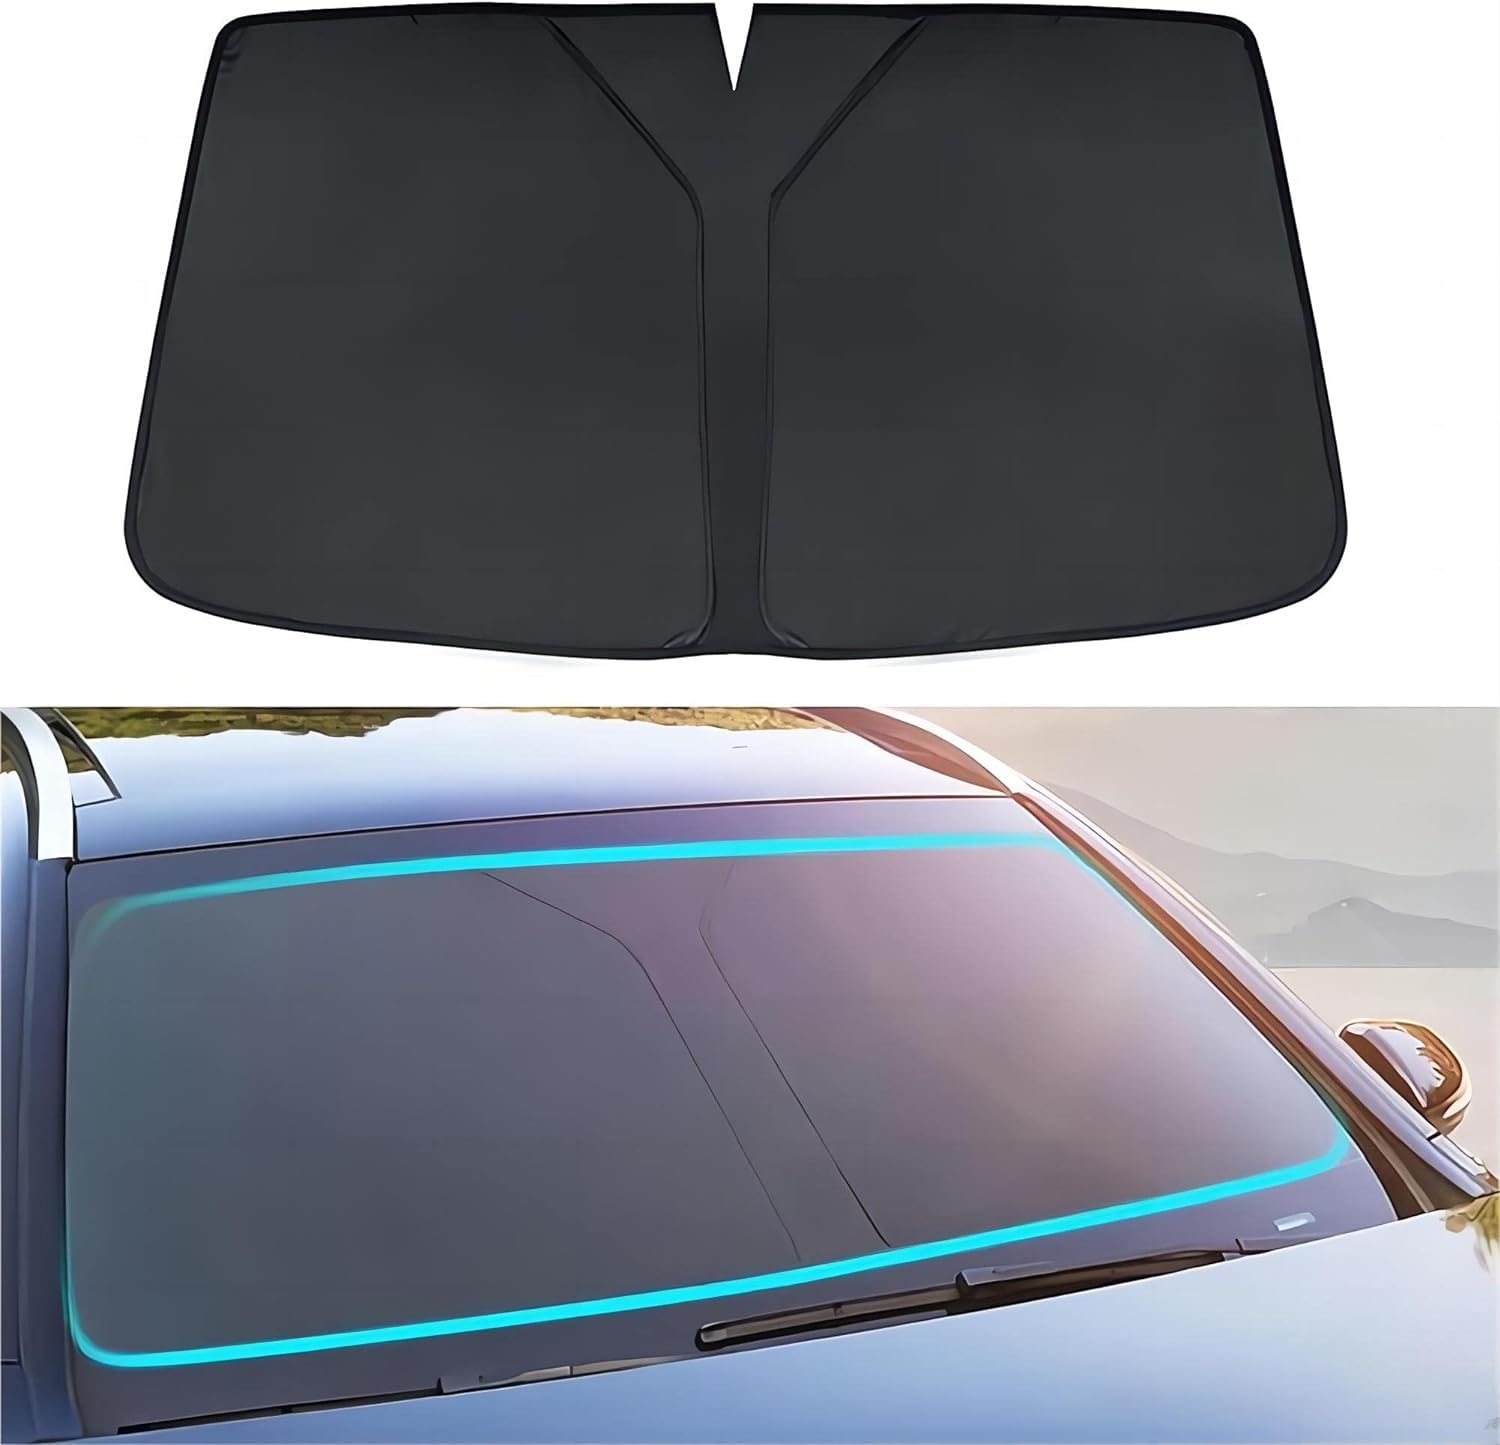 Sonnenschutz Auto Frontscheibe für Nissan Livina 2013 2014 2015 2016 2017 2018 2019, Windschutzscheibe Sonnenschutz Faltbare UV-Schutz Auto Zubehör,Black von UUJYSEXW